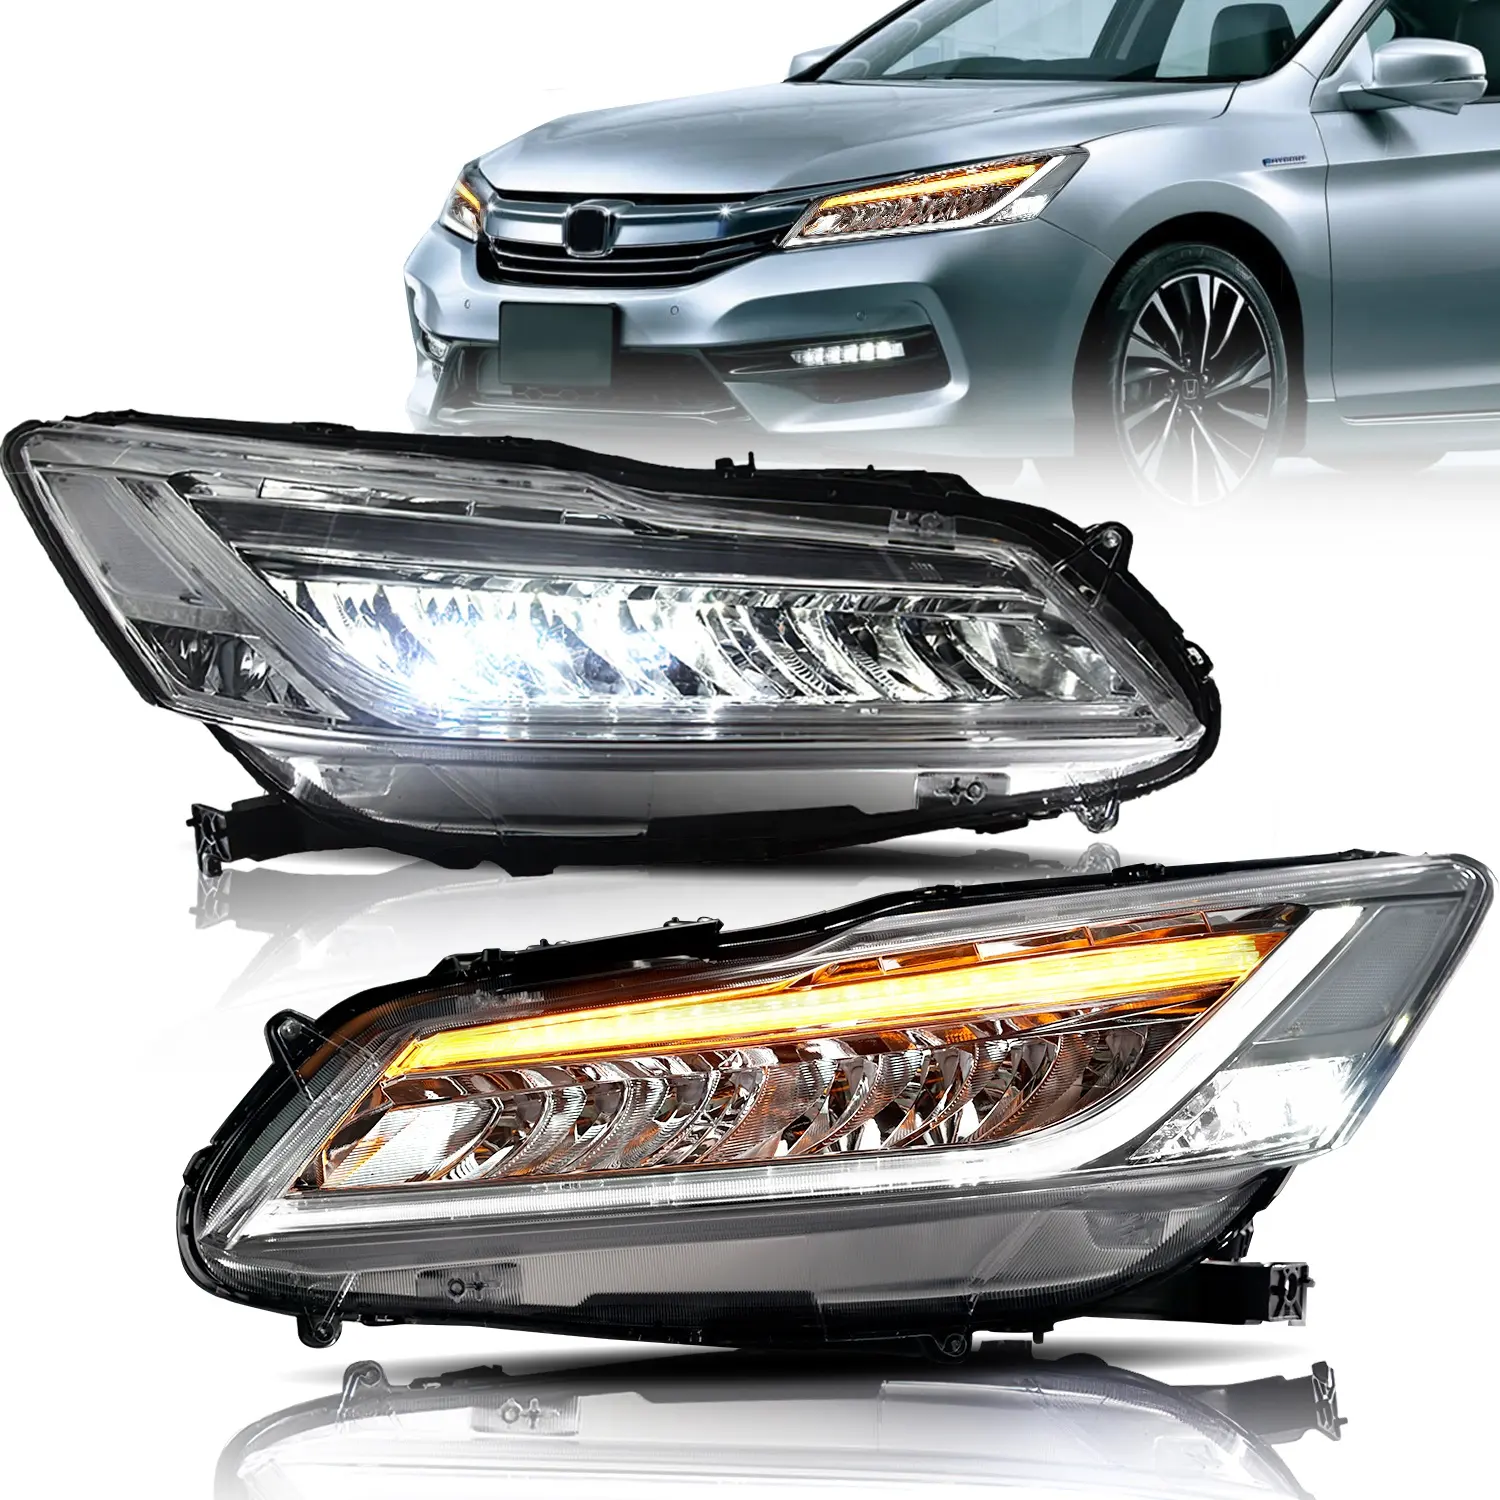 Archaic For accord 9. Scheinwerfer Voll-LED-Front leuchte RHD & LHD für Honda Accord Scheinwerfer